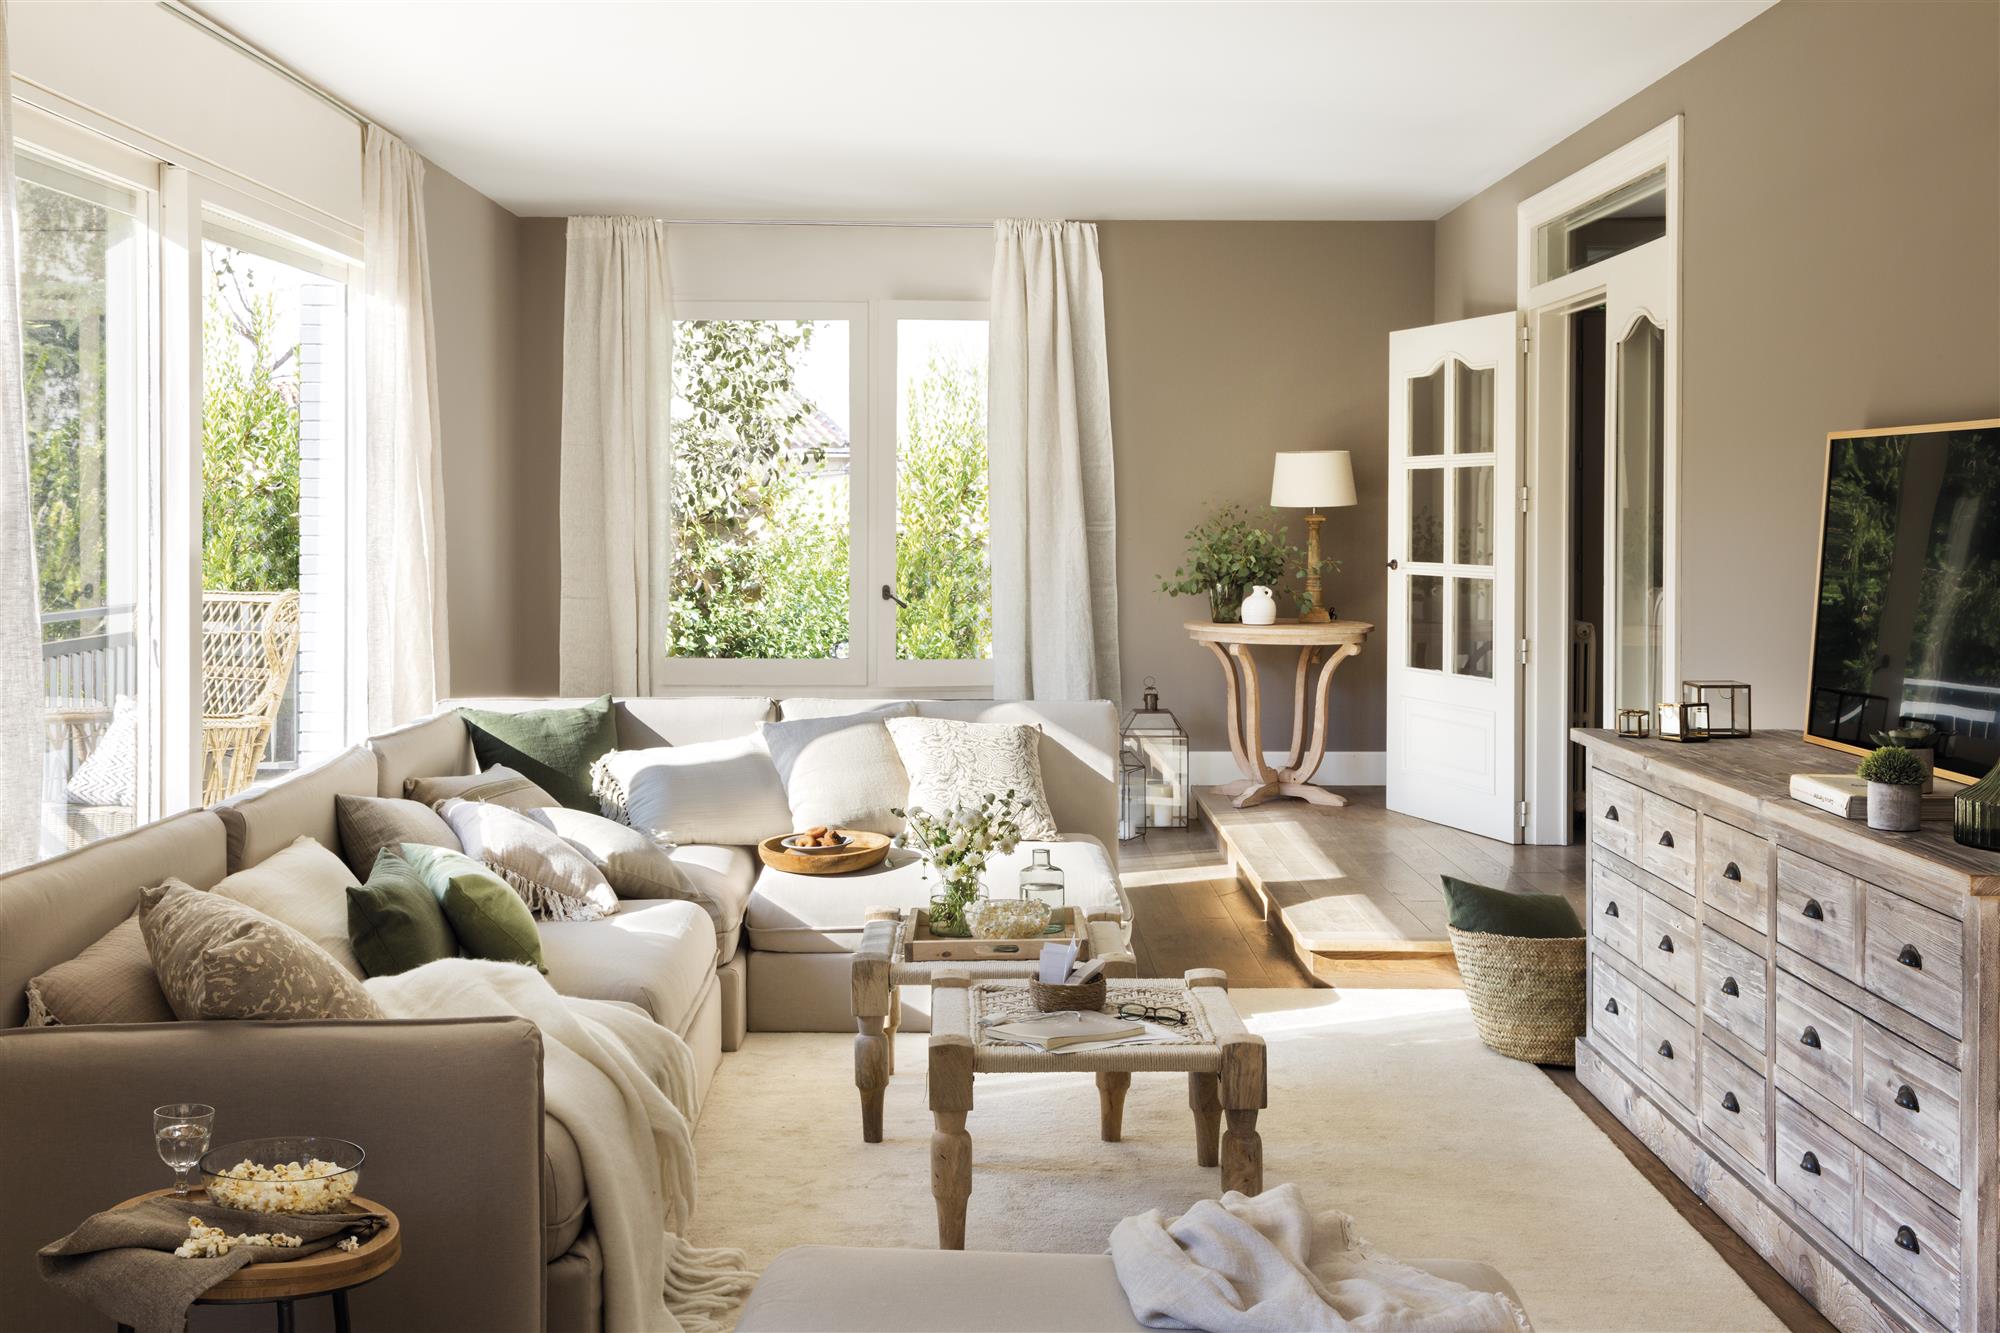 Un salón moderno con un sofá modular en gris claro y cojines blancos, grises y verdes.